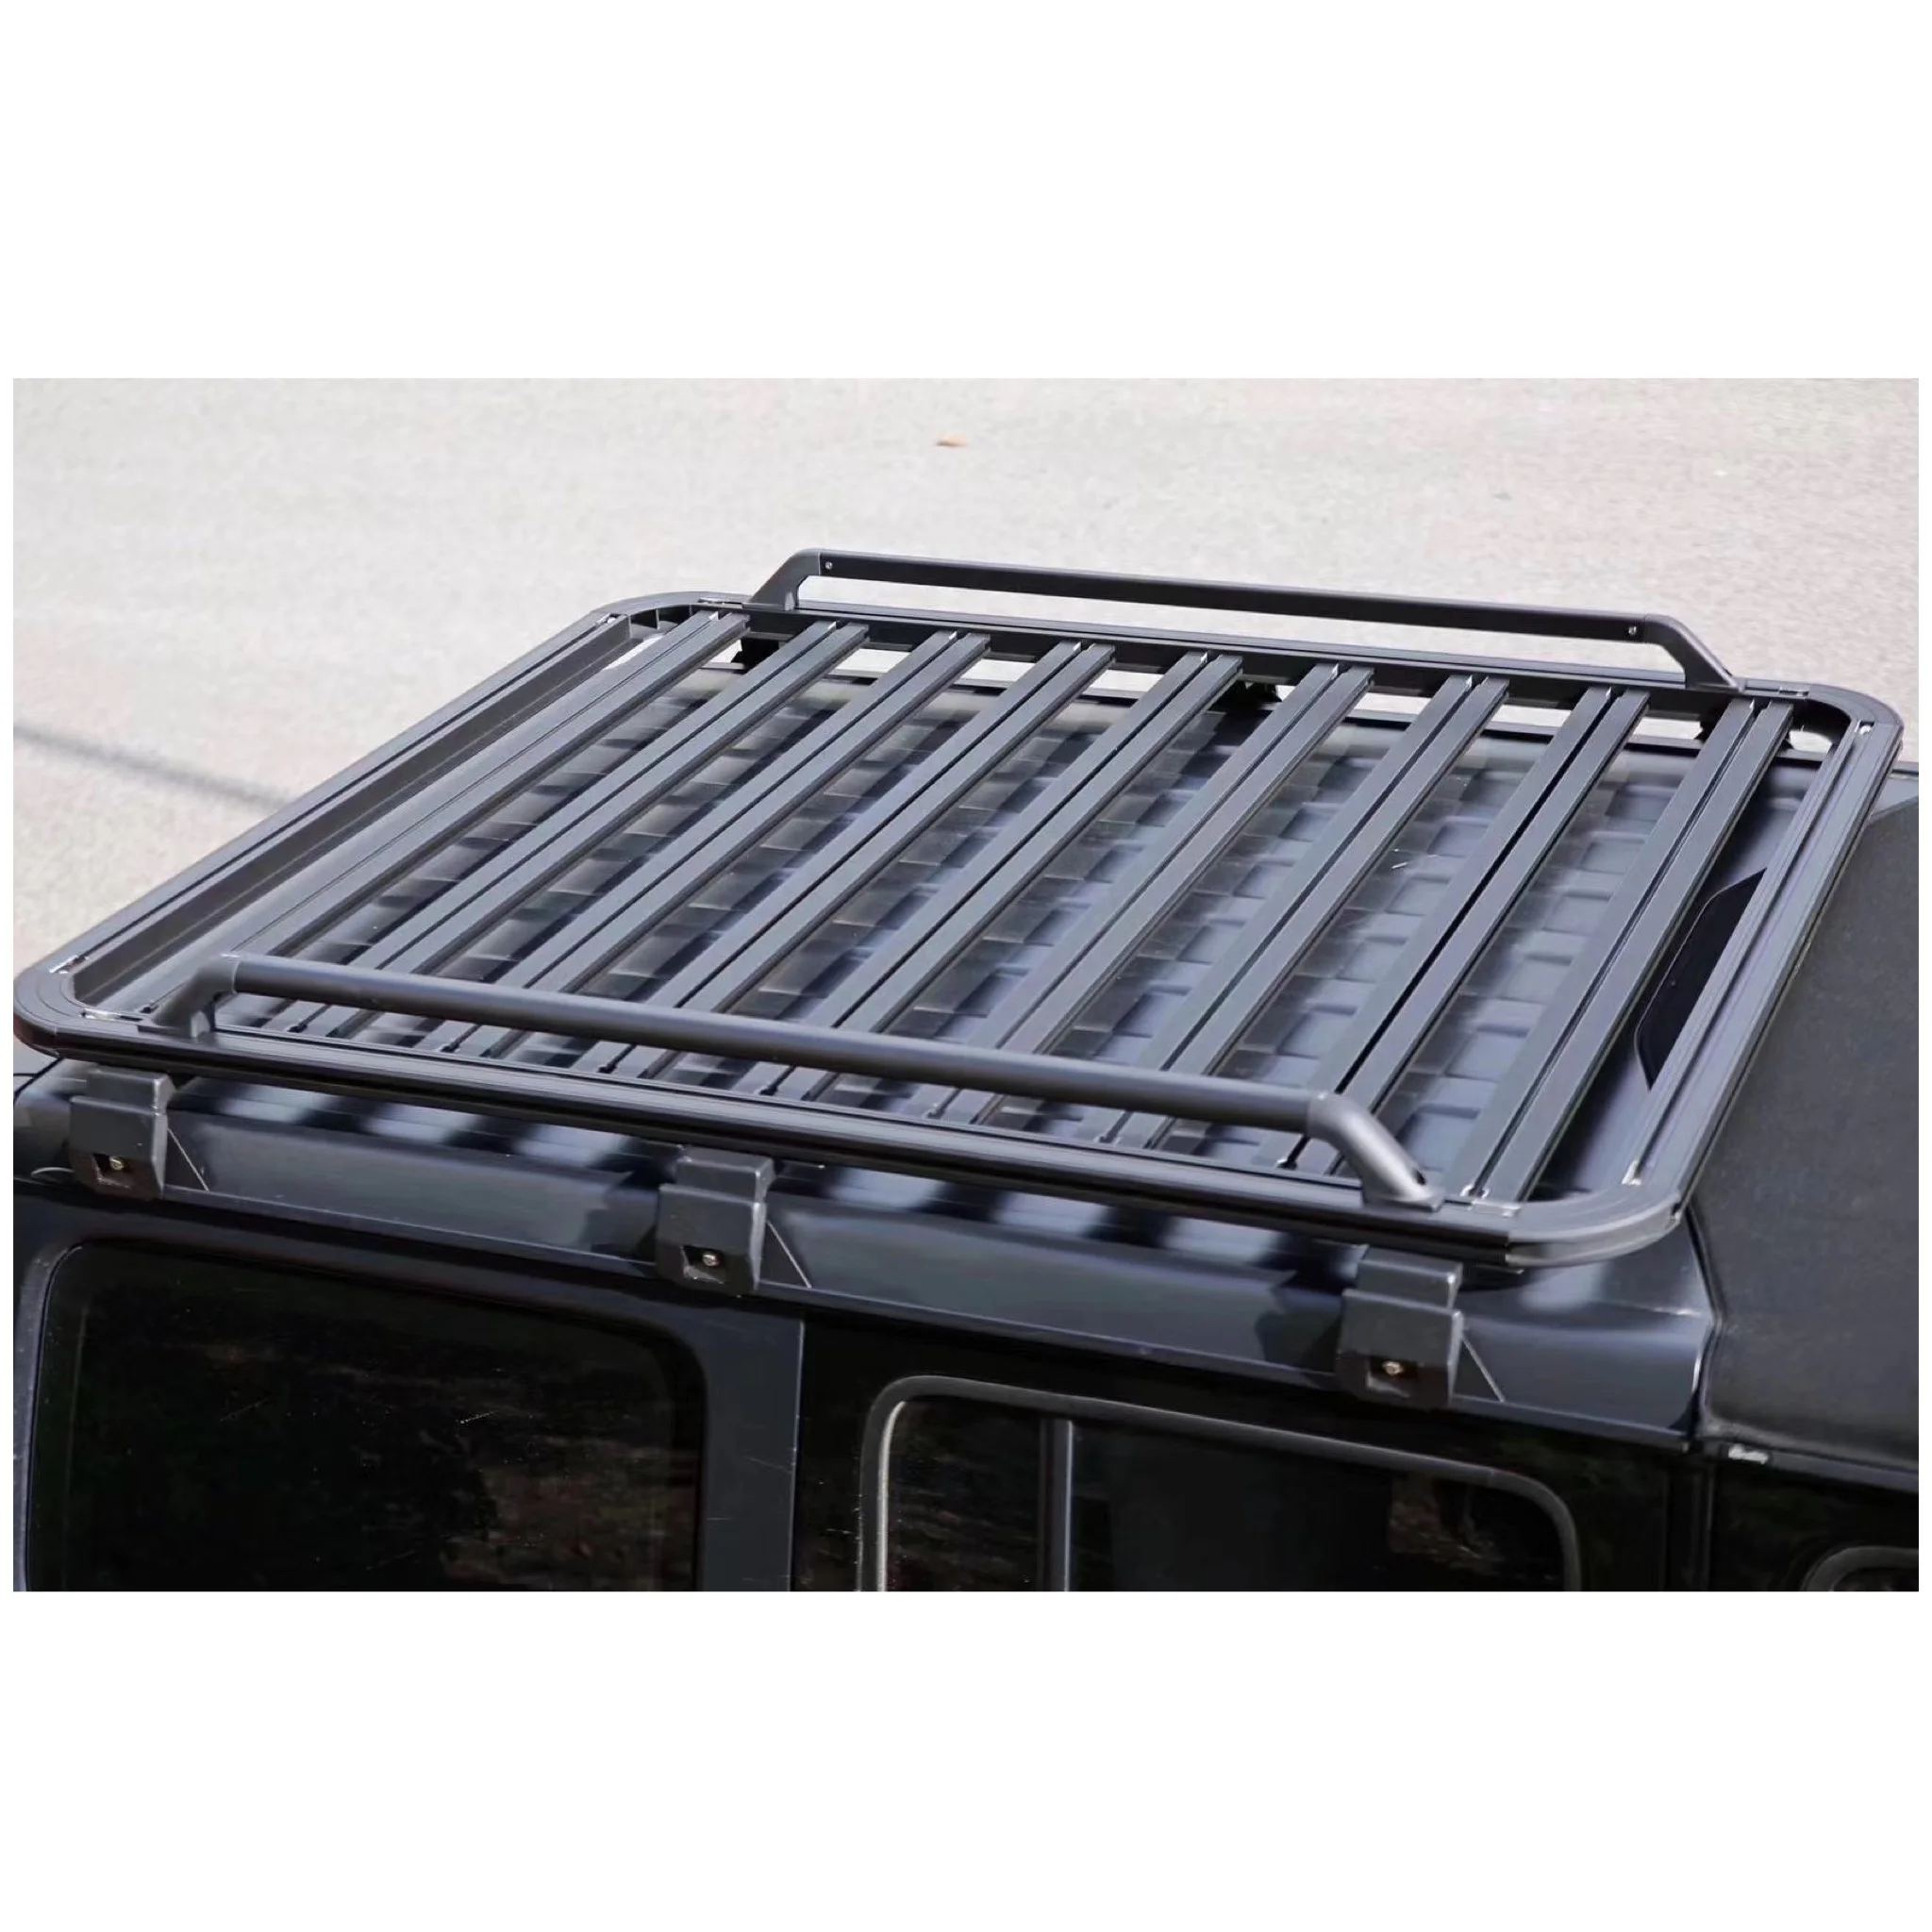 

4x4 полноразмерная кровельная платформа для Jeep Wrangler JL, автомобильные аксессуары, алюминиевая крыша, багаж, 4 двери, багажник на крышу